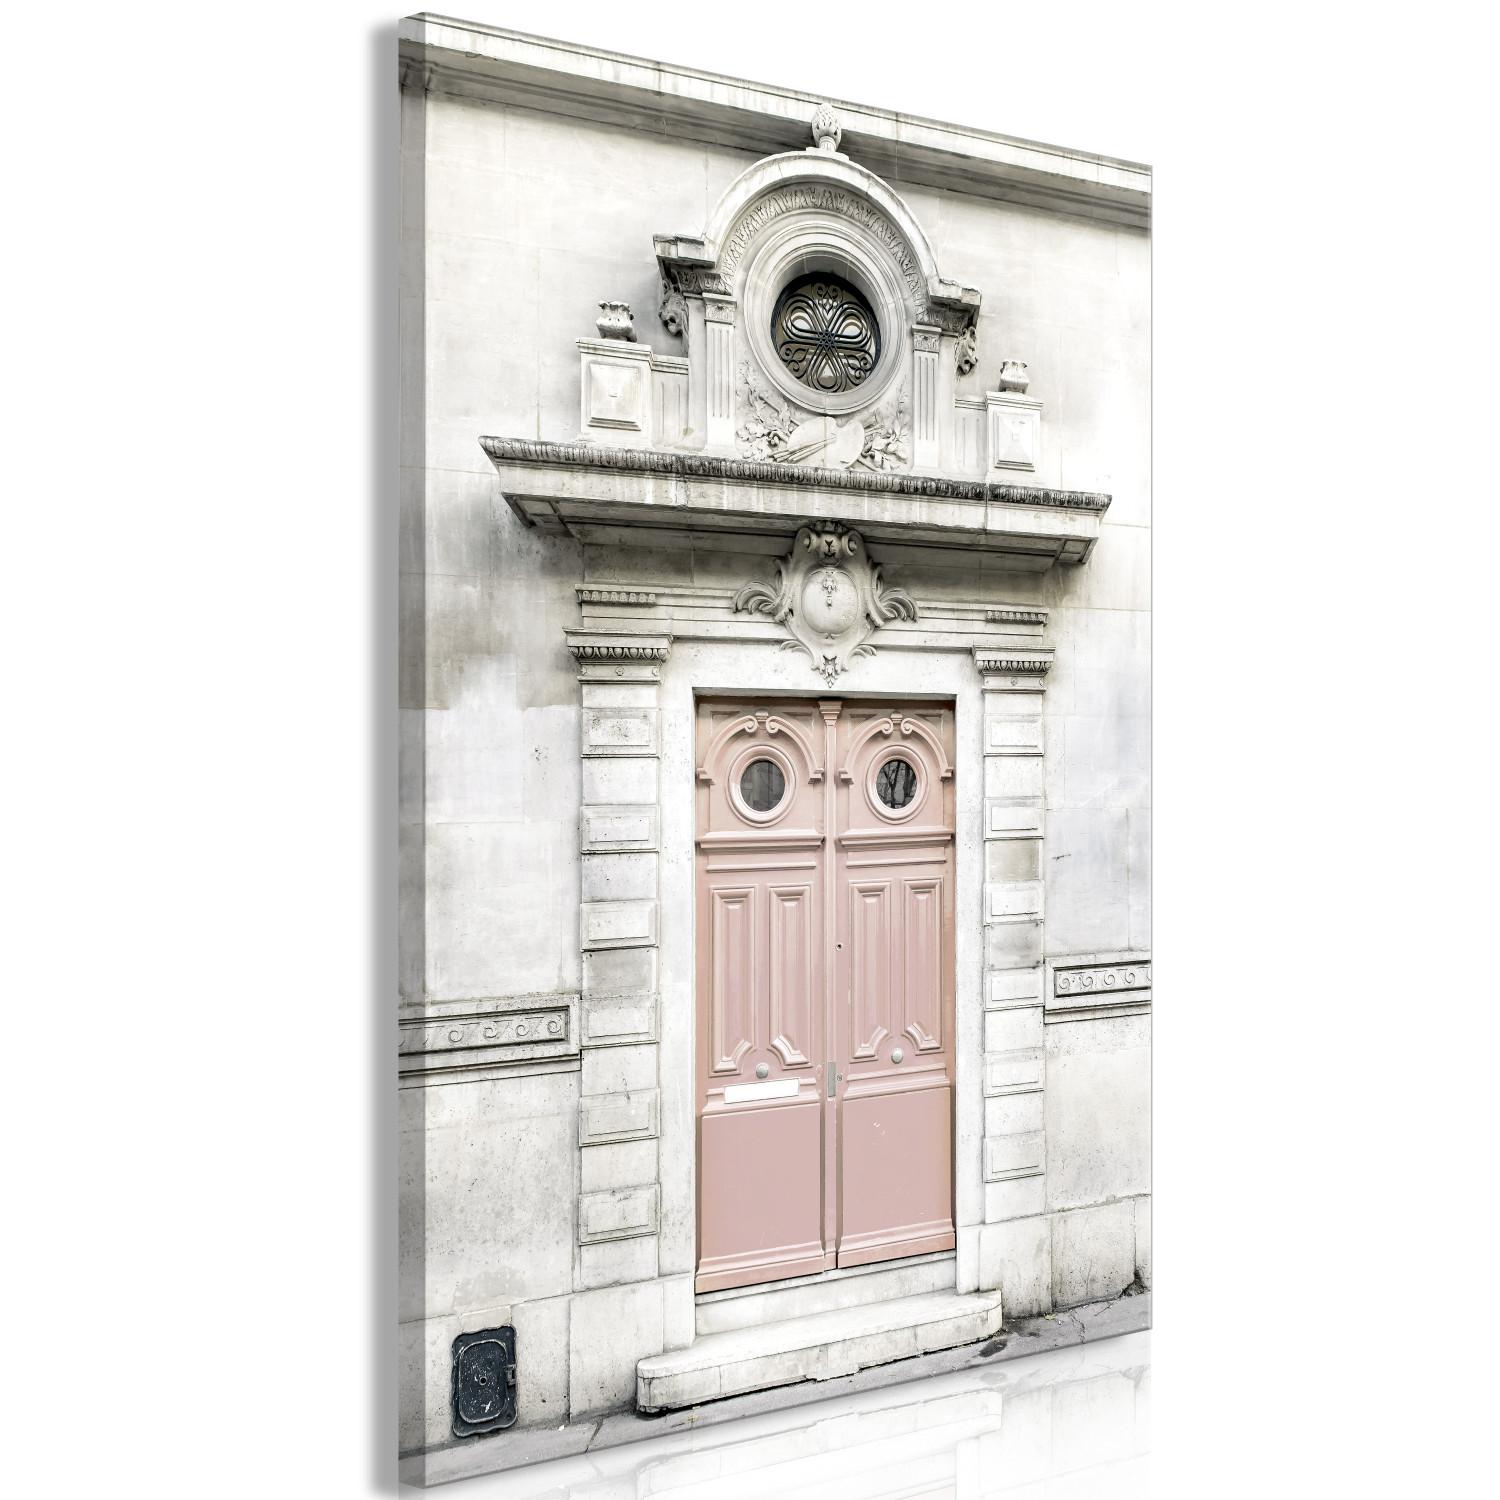 Canvas Pink Paris tenement house door - a photograph of Paris architecture